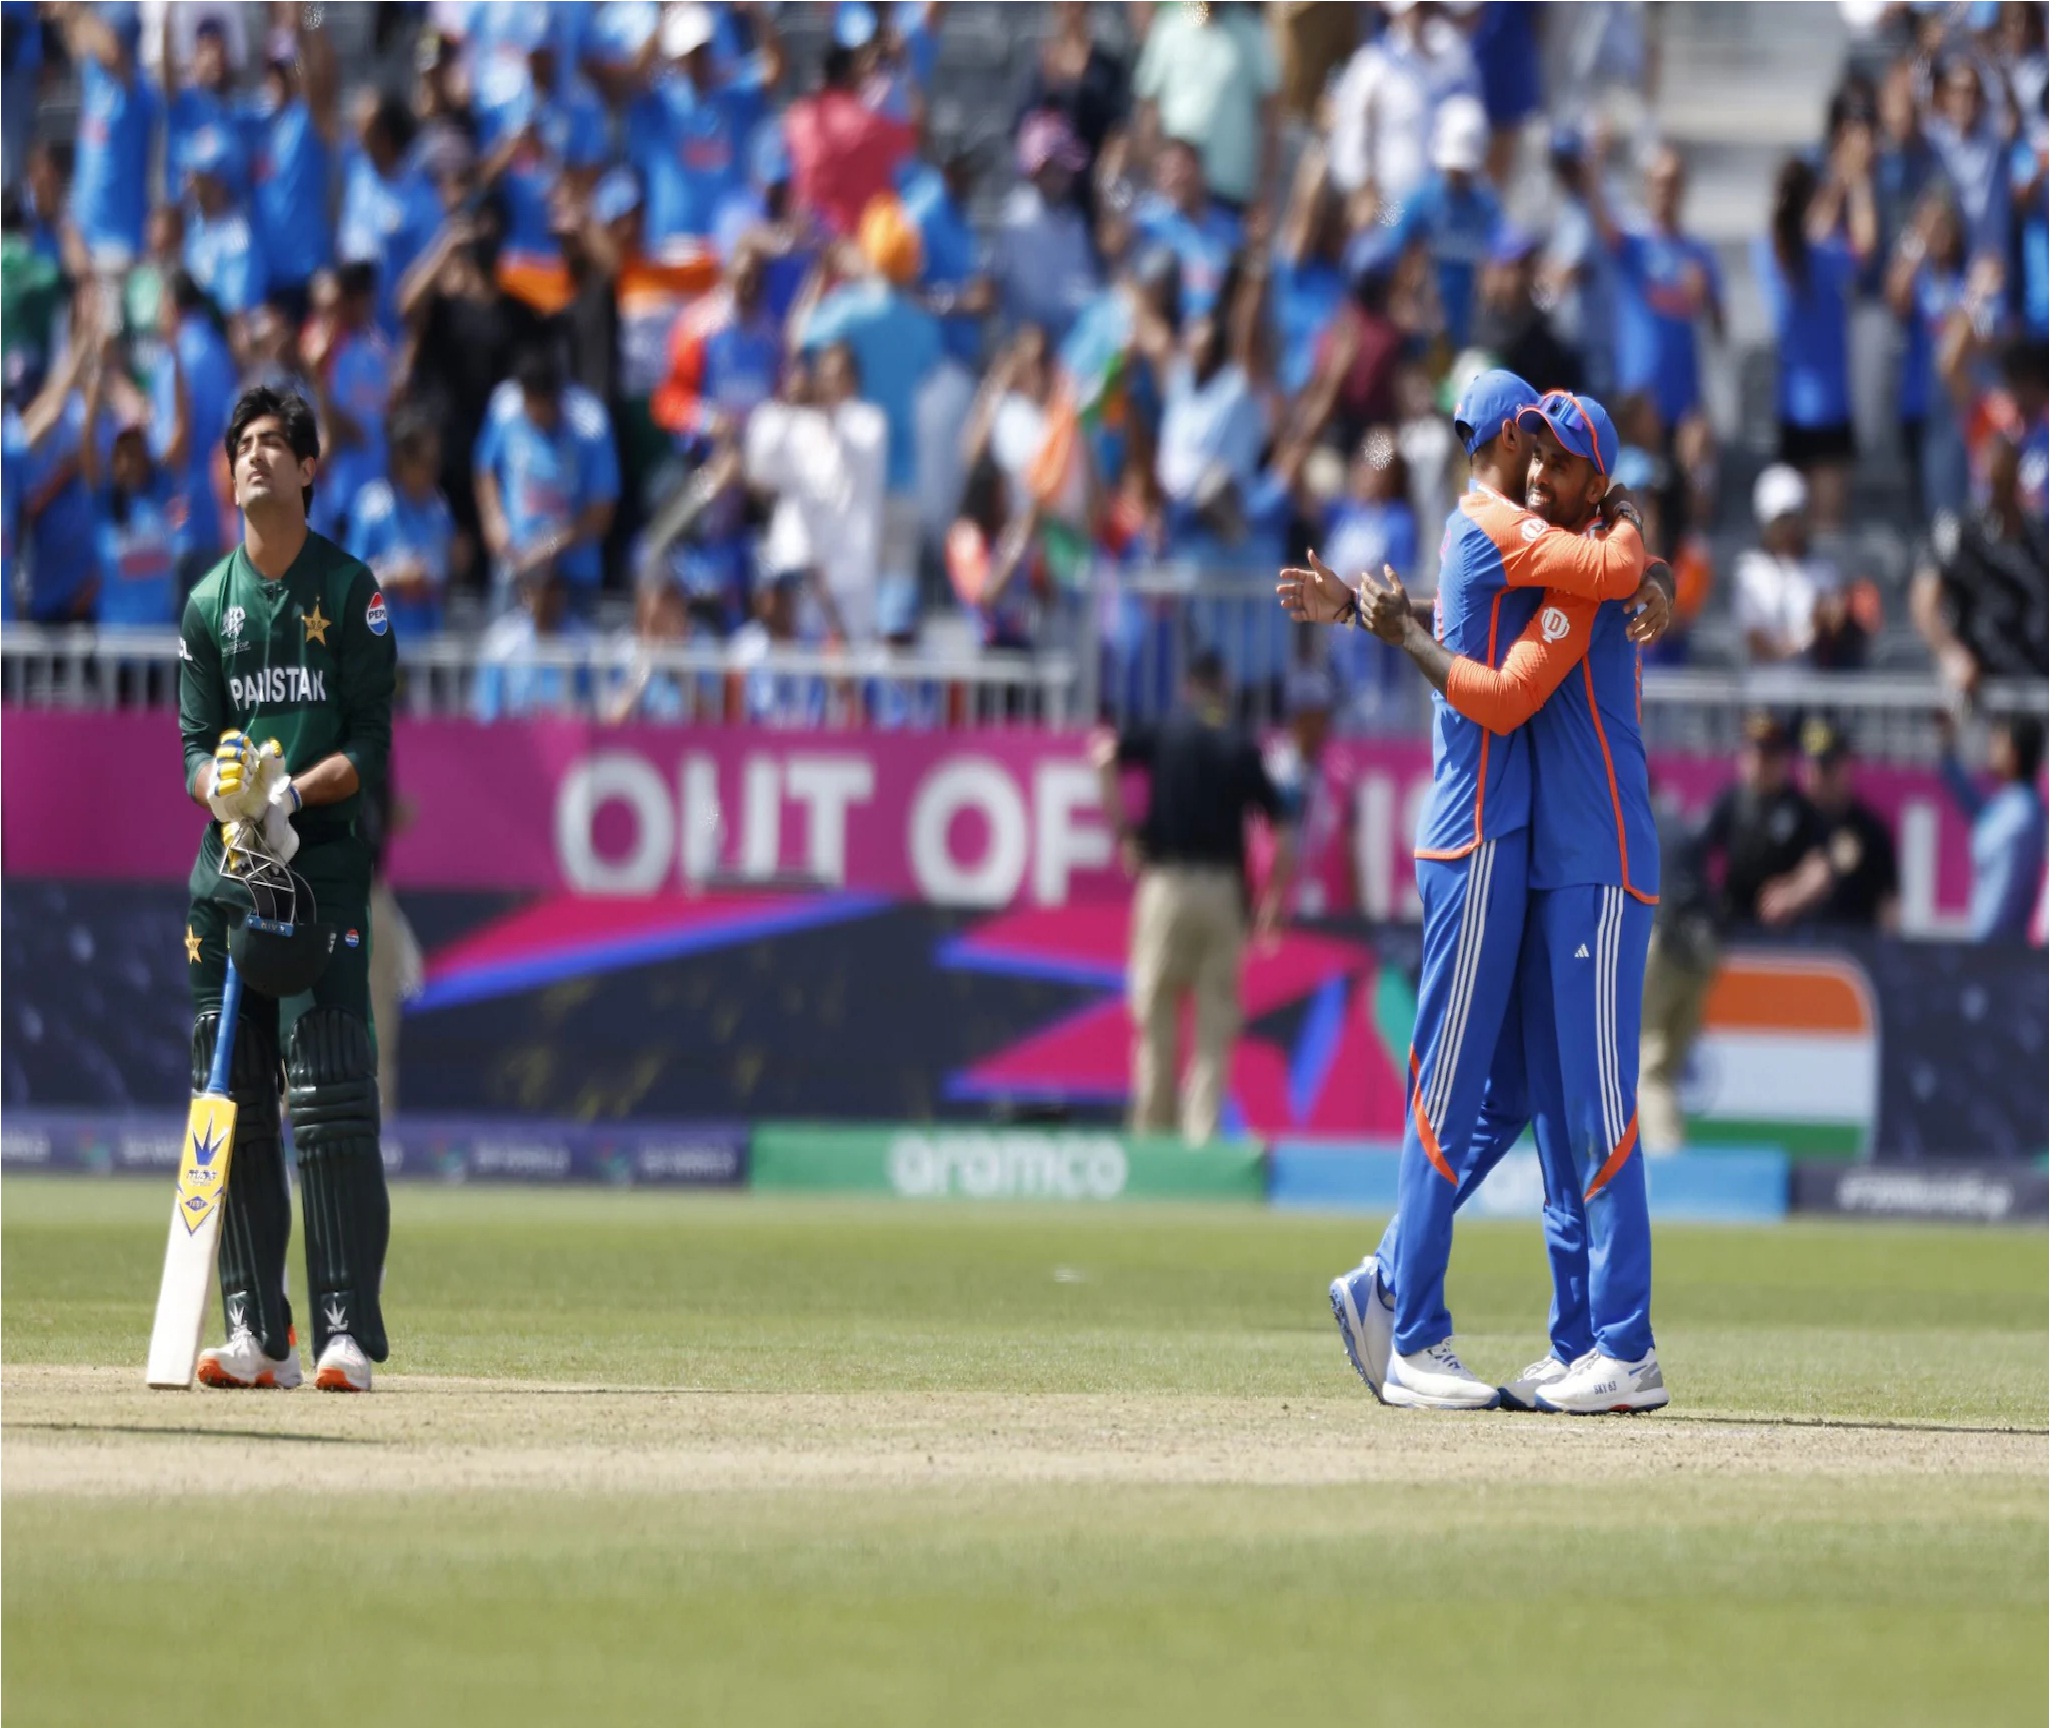 Pakistan हारा तो मैदान पर ही रोने लगा 21 साल का खिलाड़ी, भारतीय टीम ने ढाढ़स बंधाया